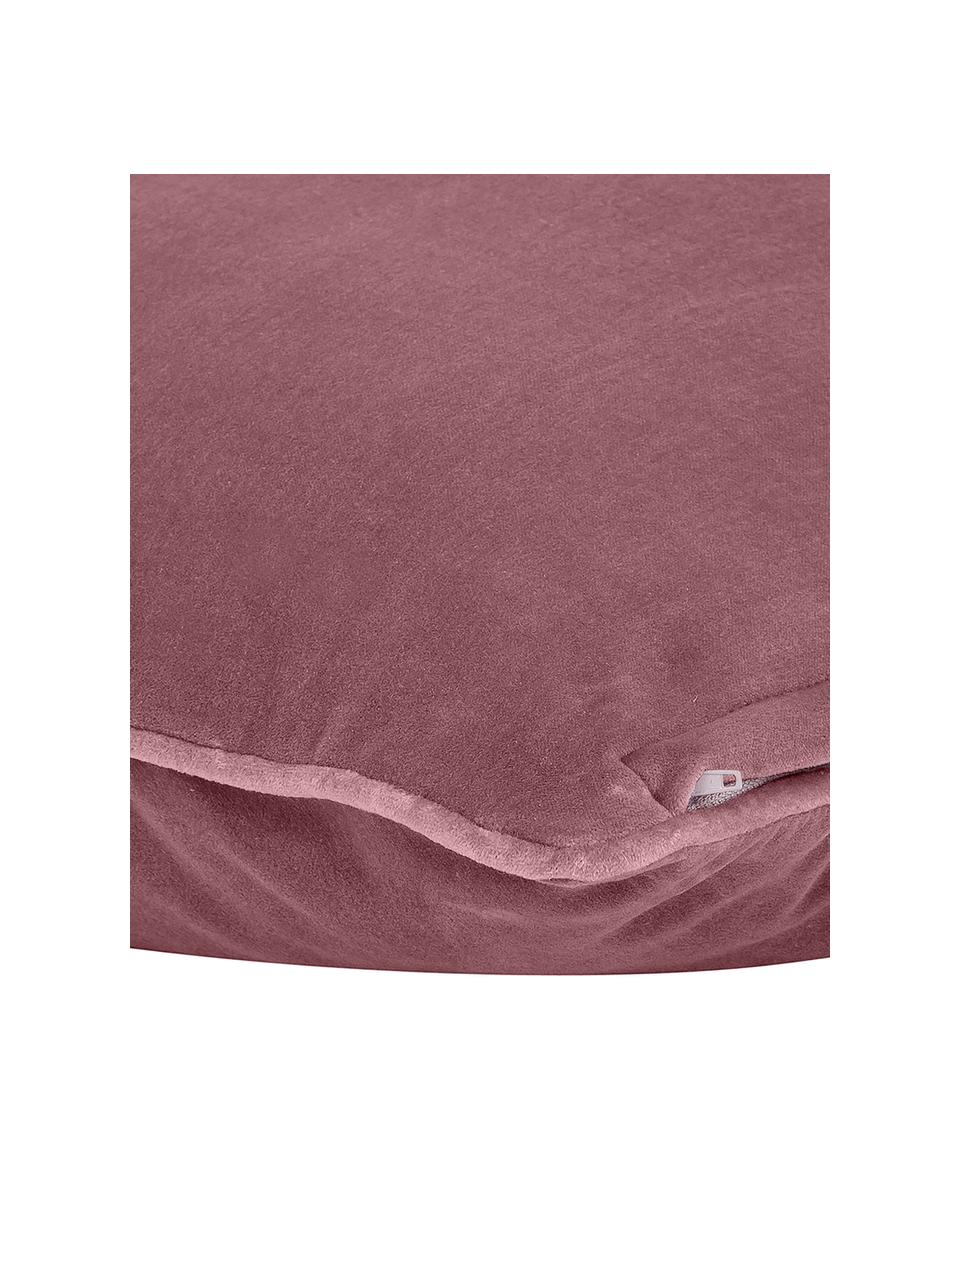 Effen fluwelen kussenhoes Dana in oudroze, 100% katoenfluweel, Oudroze, B 40 x L 40 cm